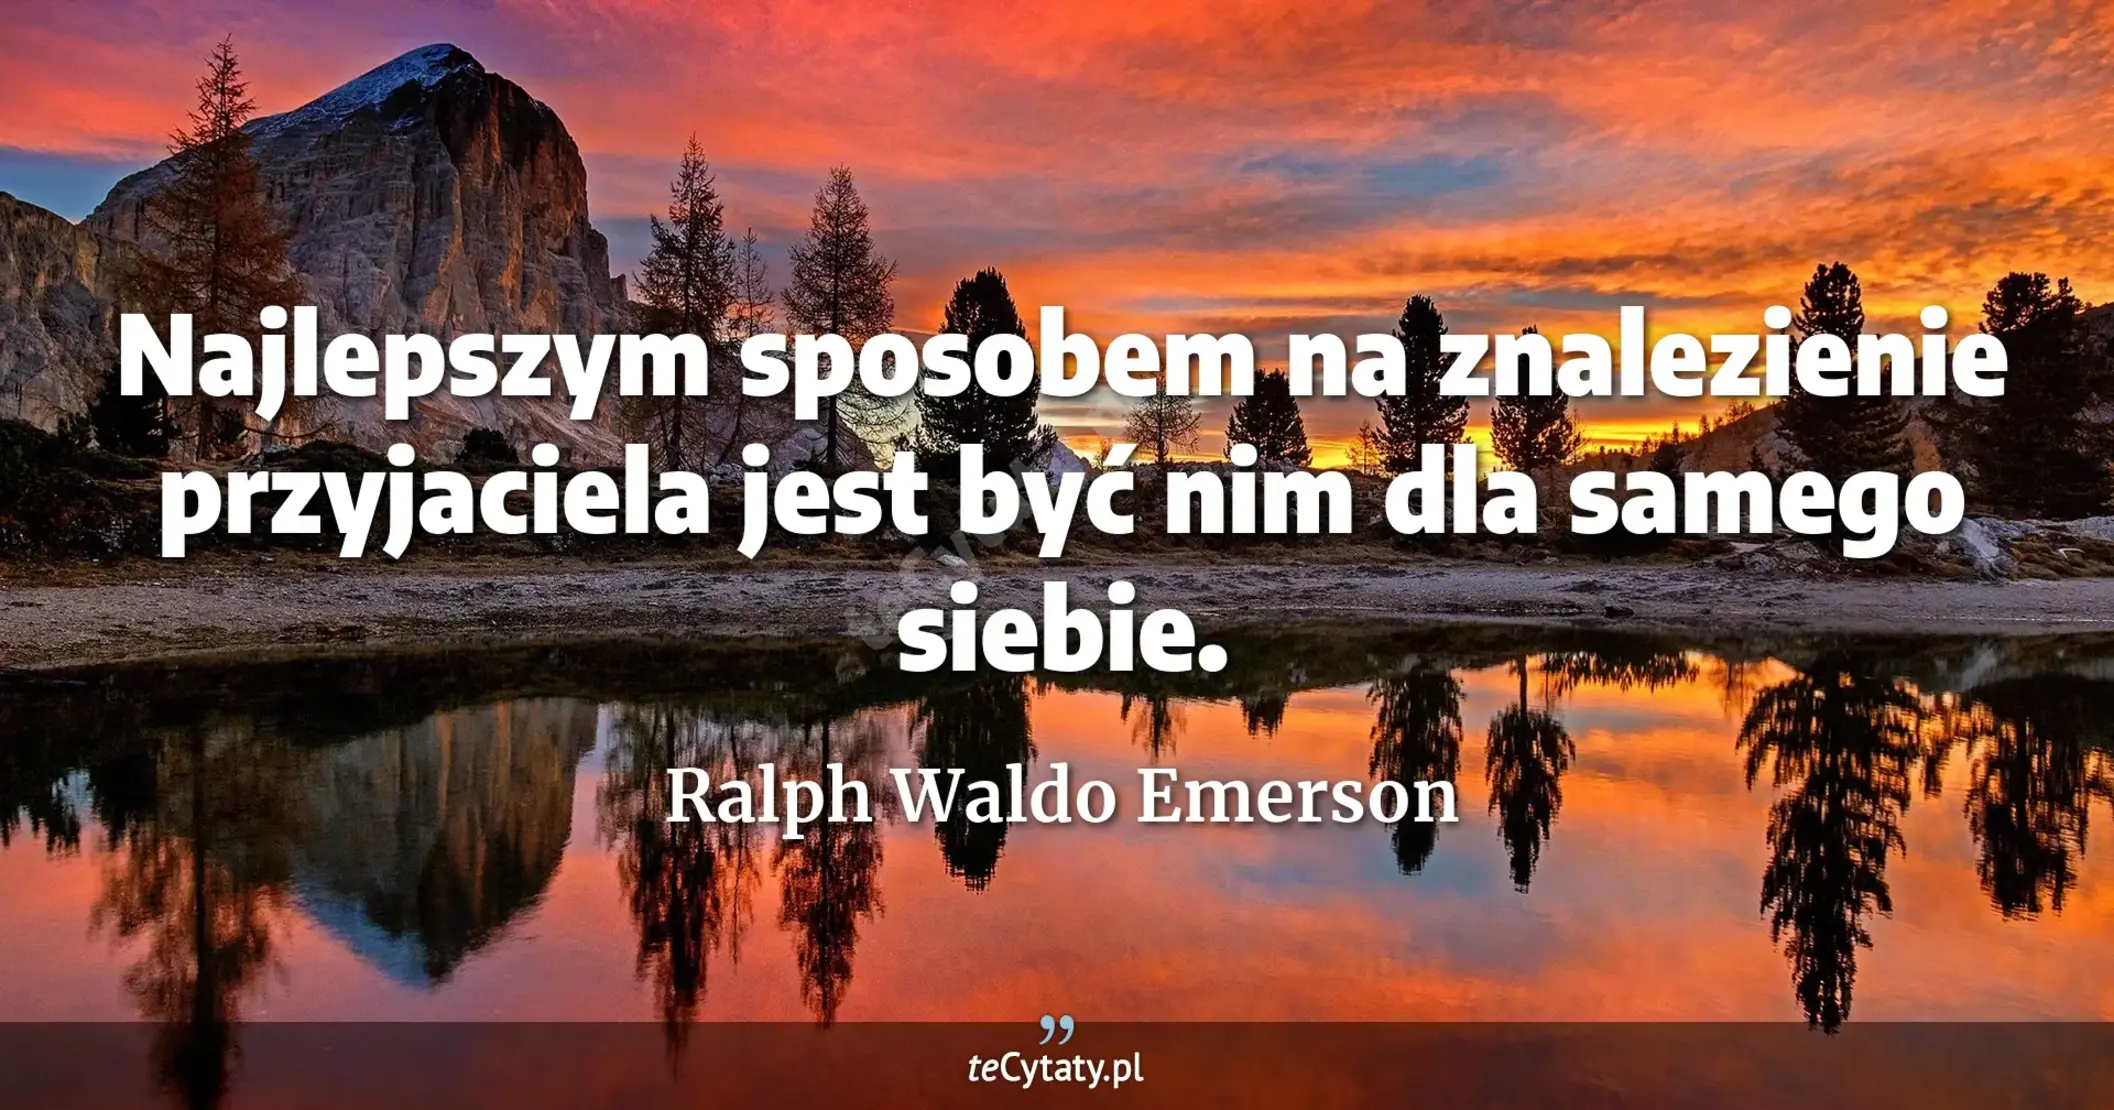 Najlepszym sposobem na znalezienie przyjaciela jest być nim dla samego siebie. - Ralph Waldo Emerson